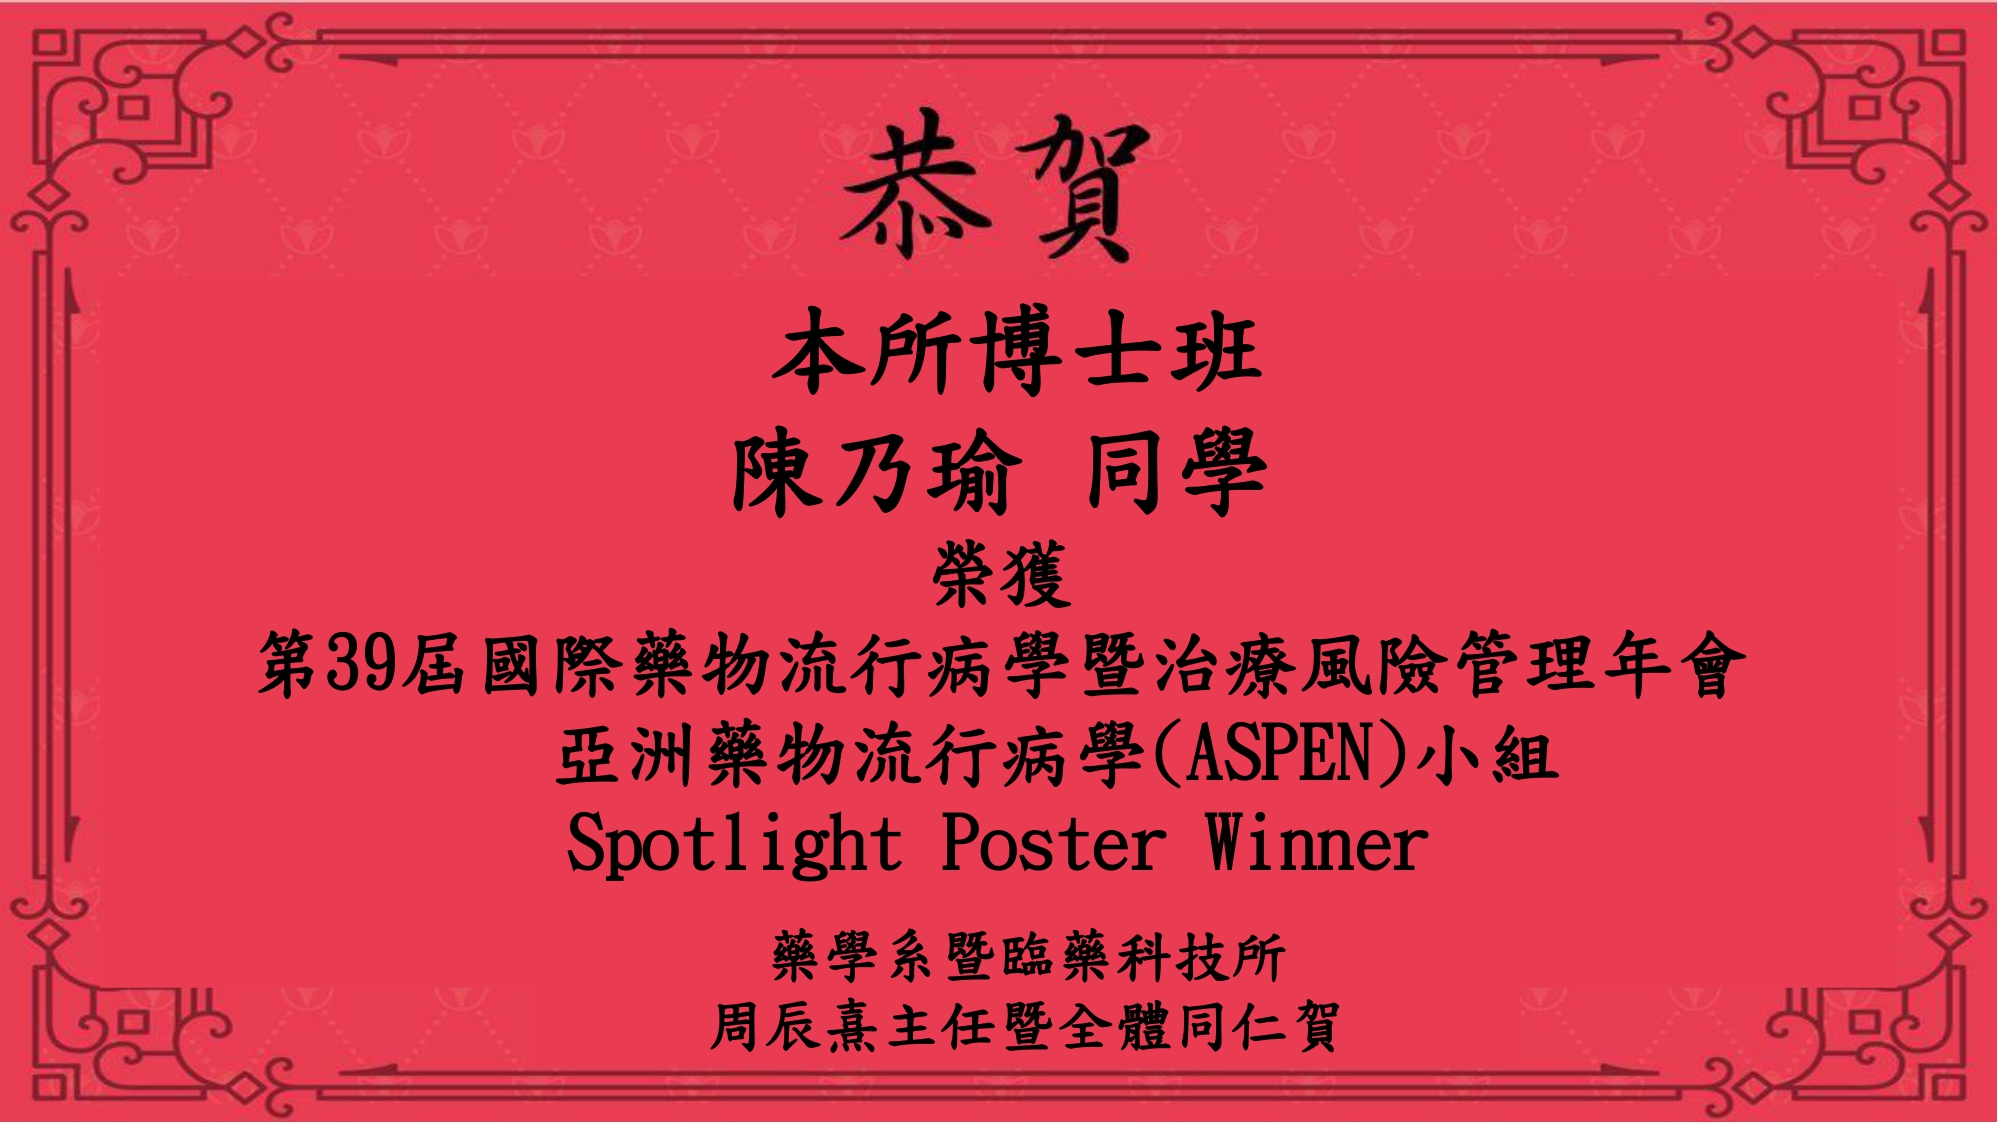 恭賀本所博士班陳乃瑜同學榮獲第39屆國際藥物流行病學暨治療風險管理年會亞洲藥物流行病學(ASPEN)小組 Spotlight Poster Winner